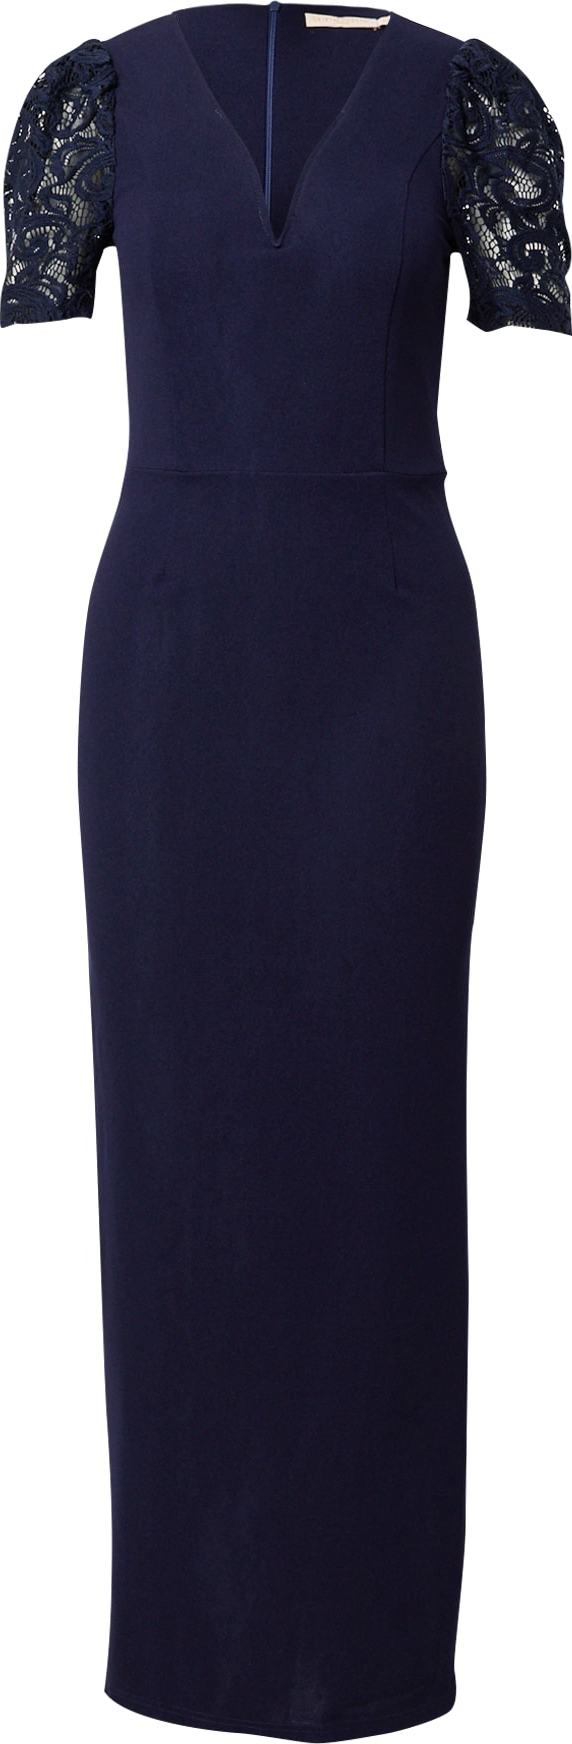 Skirt & Stiletto Společenské šaty 'Vivyian' námořnická modř